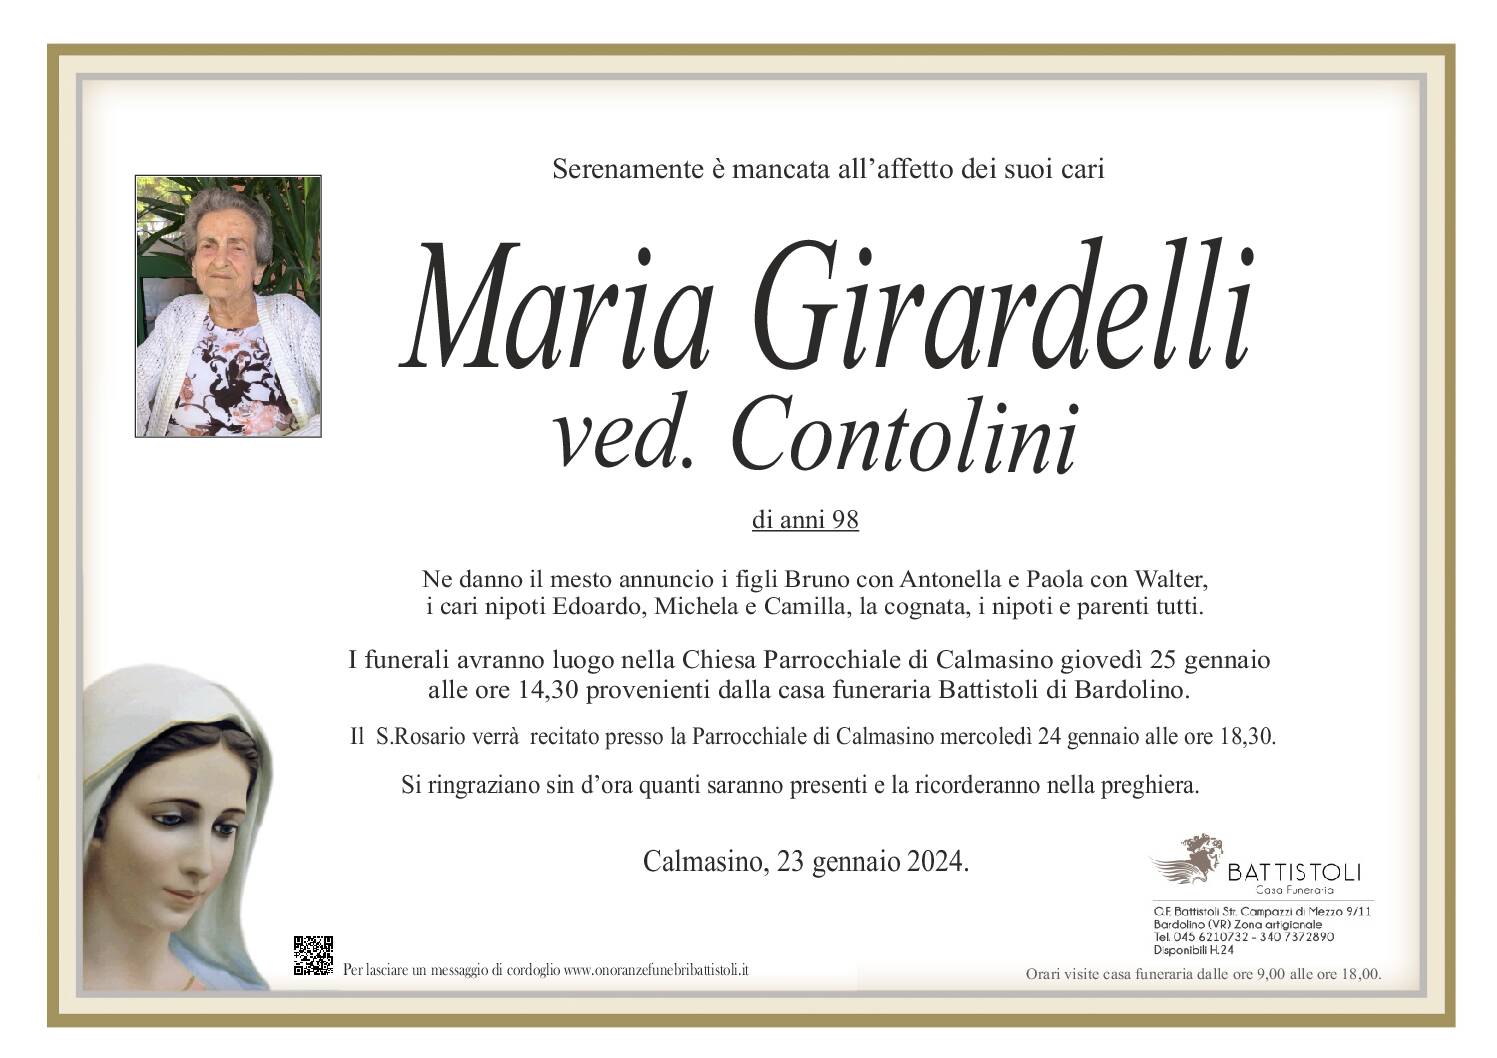 Girardelli Maria